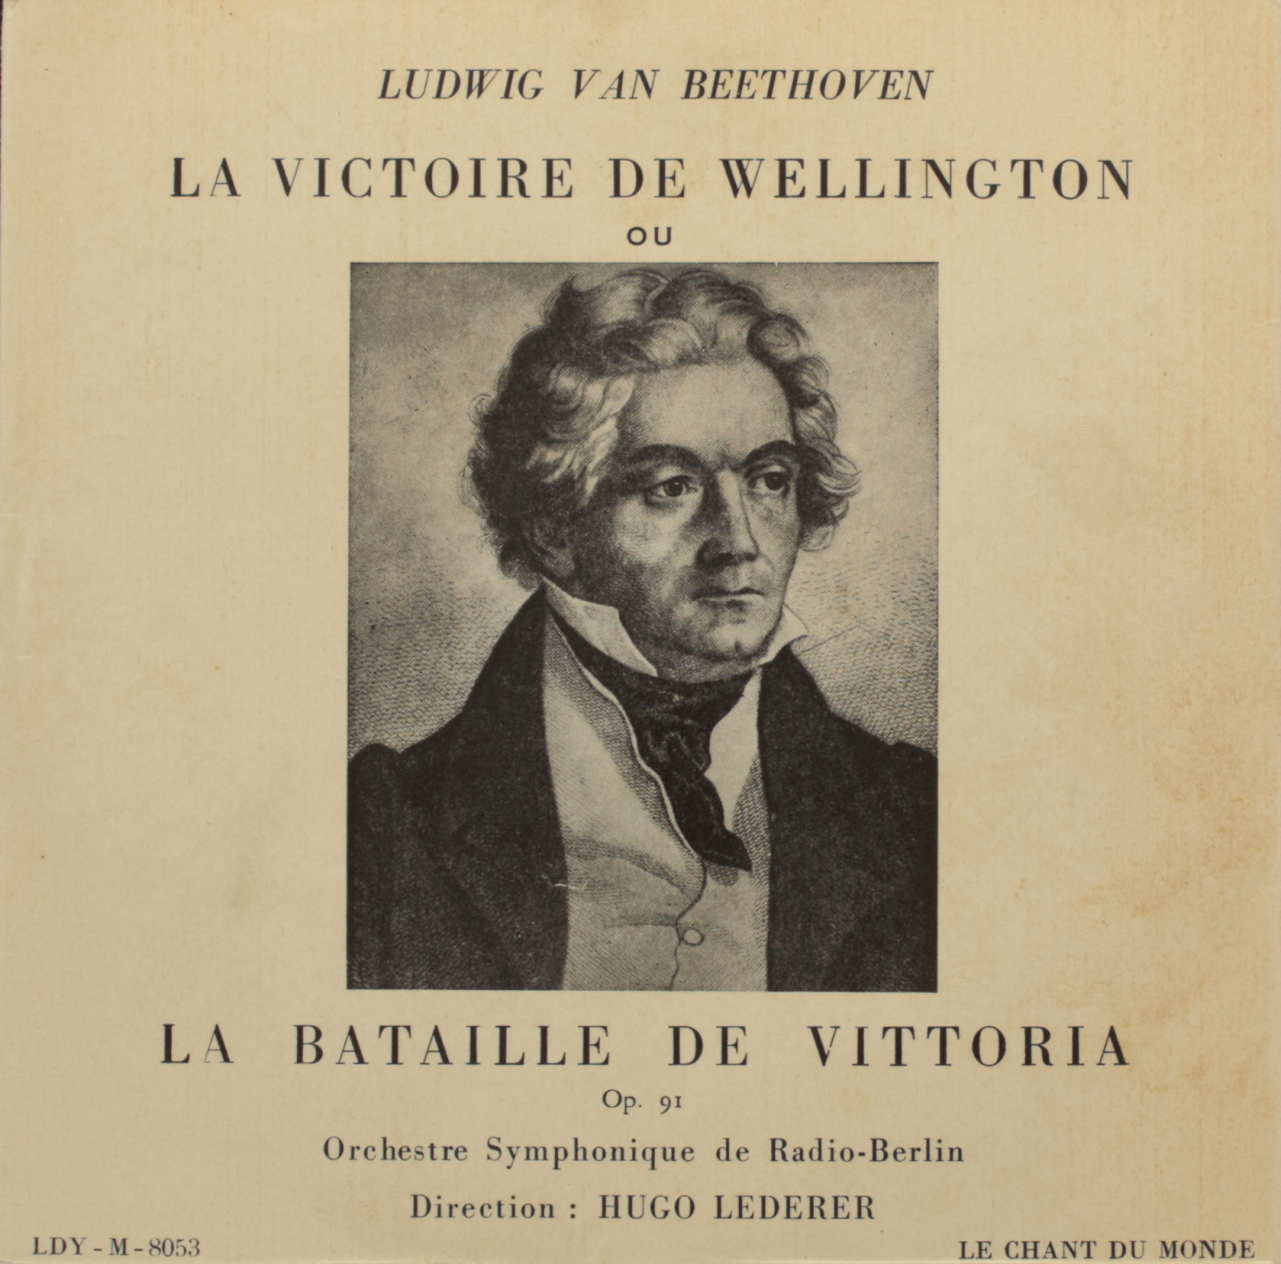 Beethoven: La Victoire de Wellington ou La Bataille de Vittoria - Fantaisie pour Orchestre, Op. 91